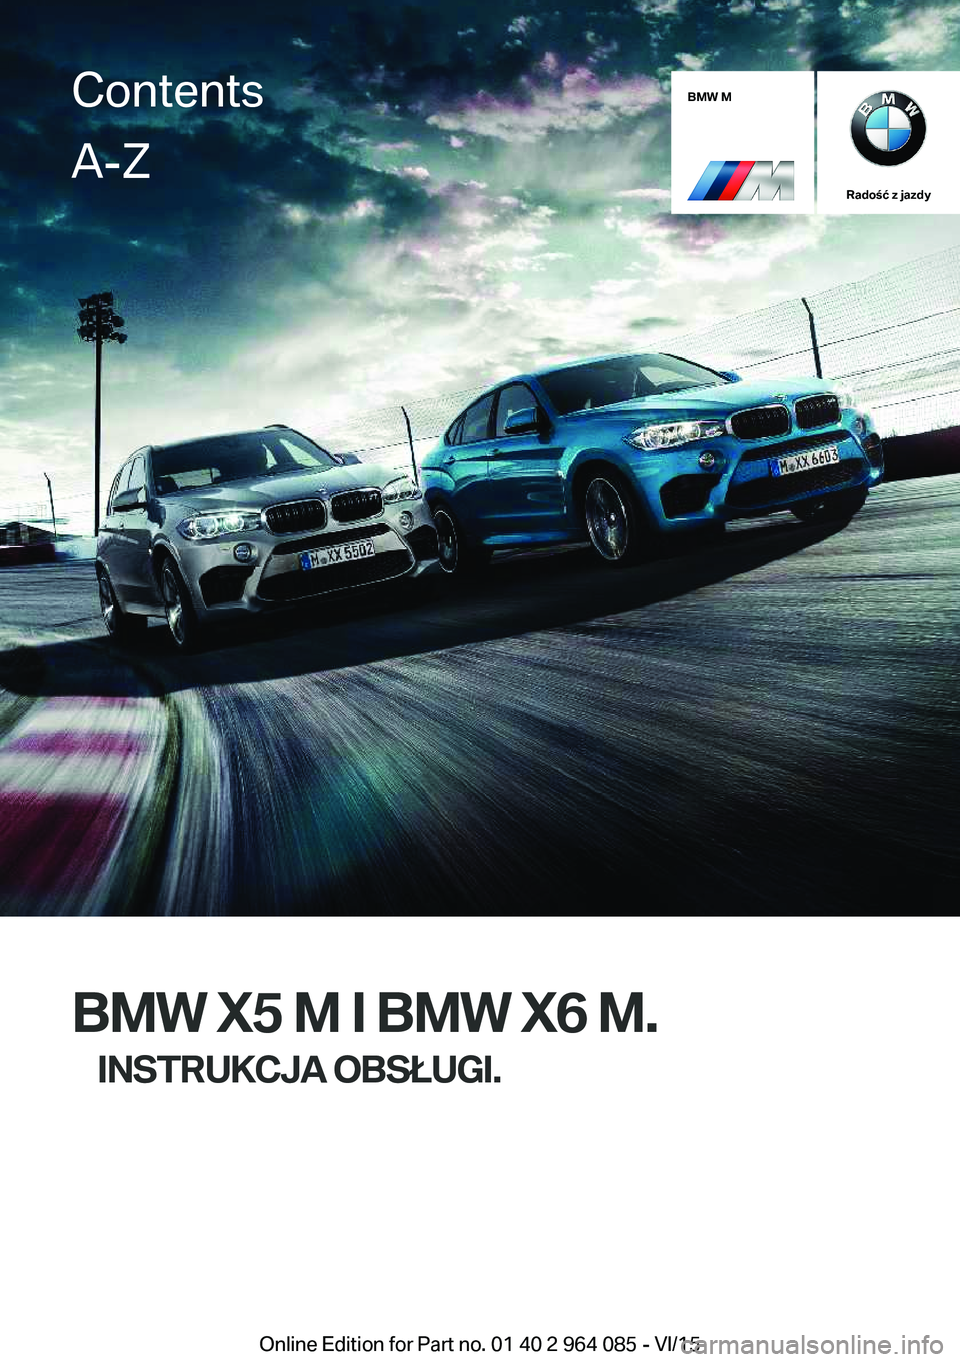 BMW X6 M 2016  Instrukcja obsługi (in Polish) BMW M
Radość z jazdy
BMW X5 M I BMW X6 M.INSTRUKCJA OBSŁUGI.
ContentsA-Z
Online Edition for Part no. 01 40 2 964 085 - VI/15   